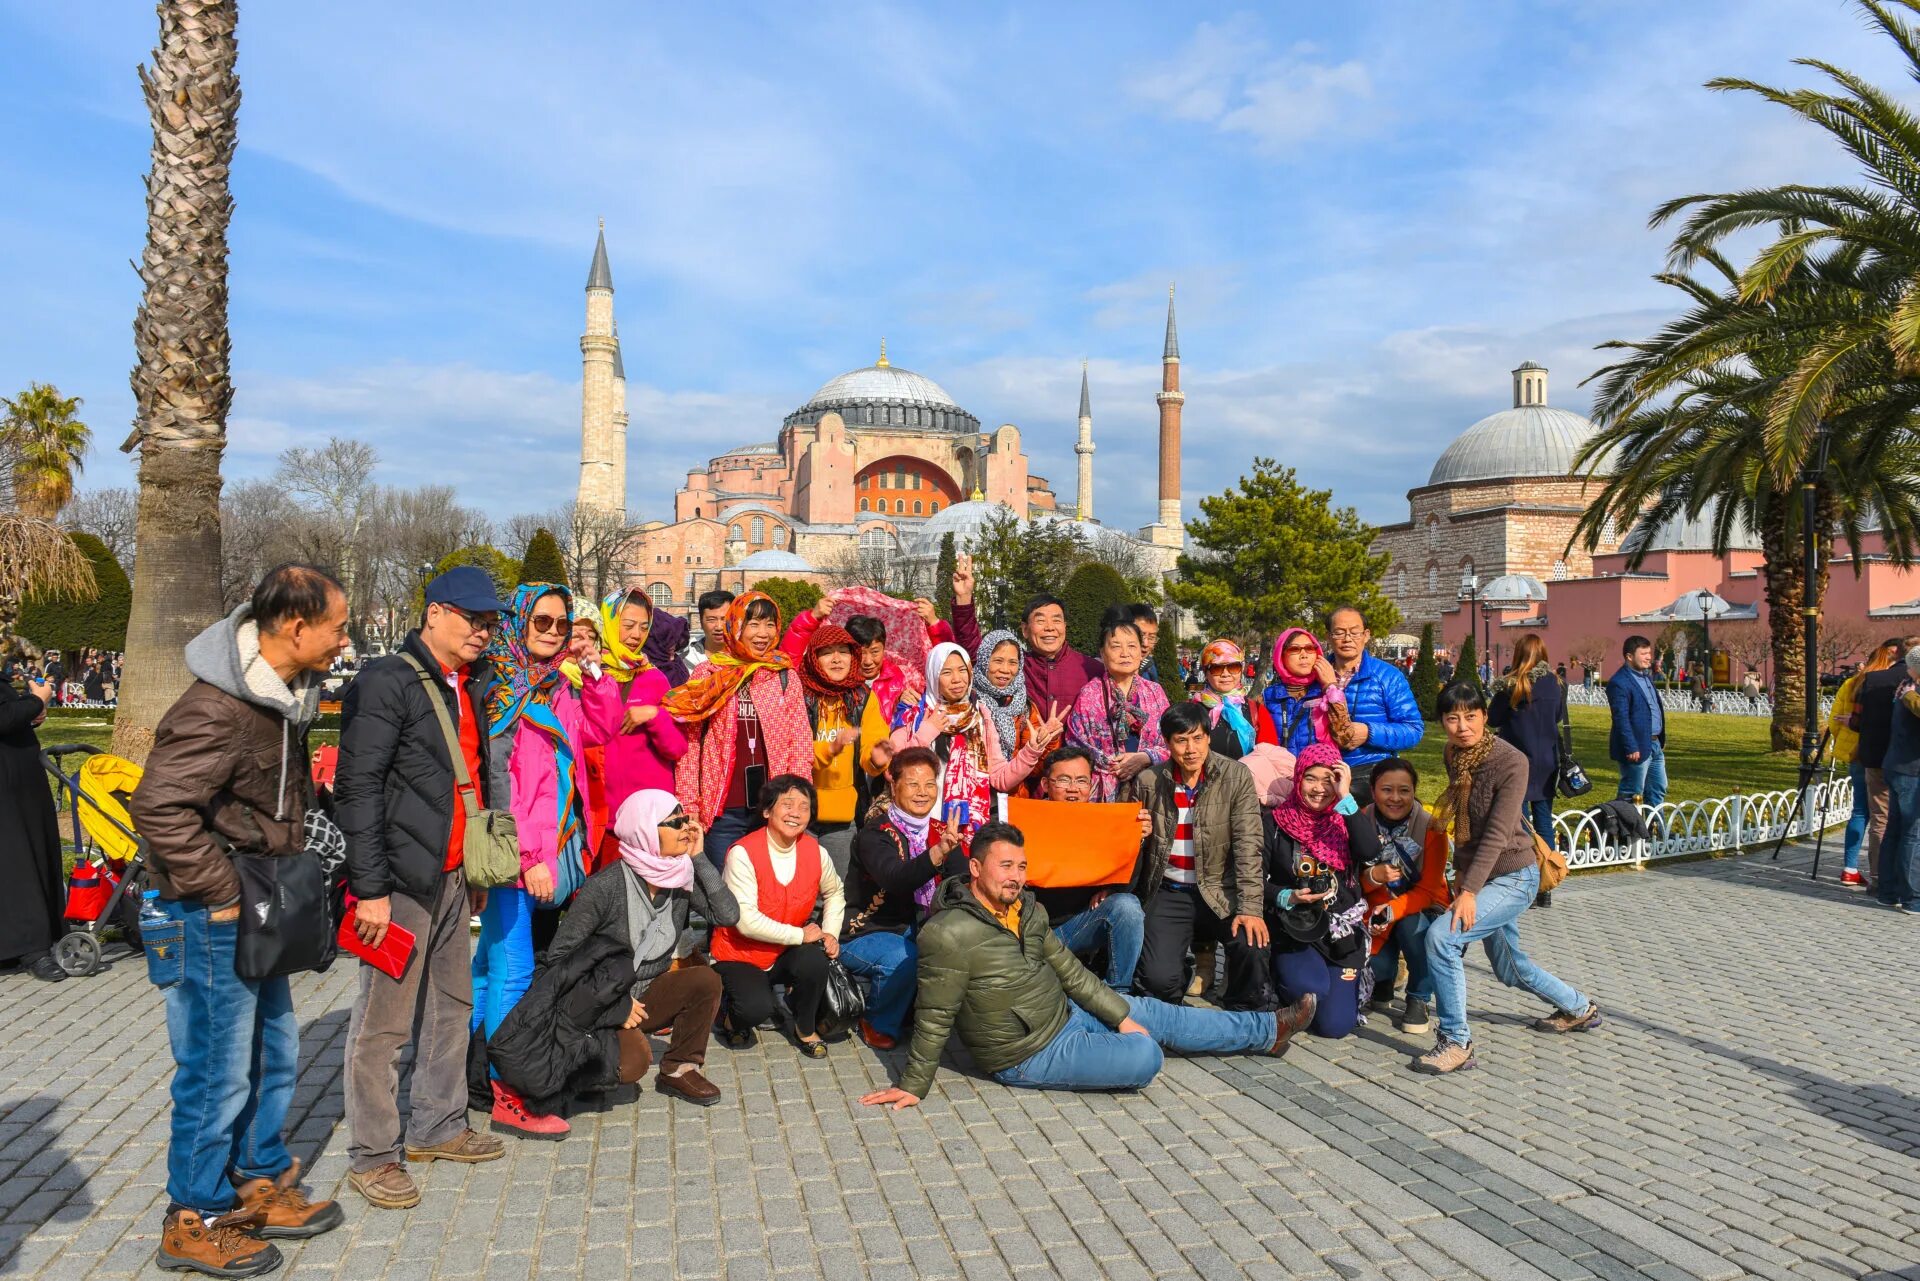 Group turkey. Стамбул туристы. Турция туризм. Стамбул экскурсии для туристов. Стамбул фото туристов.